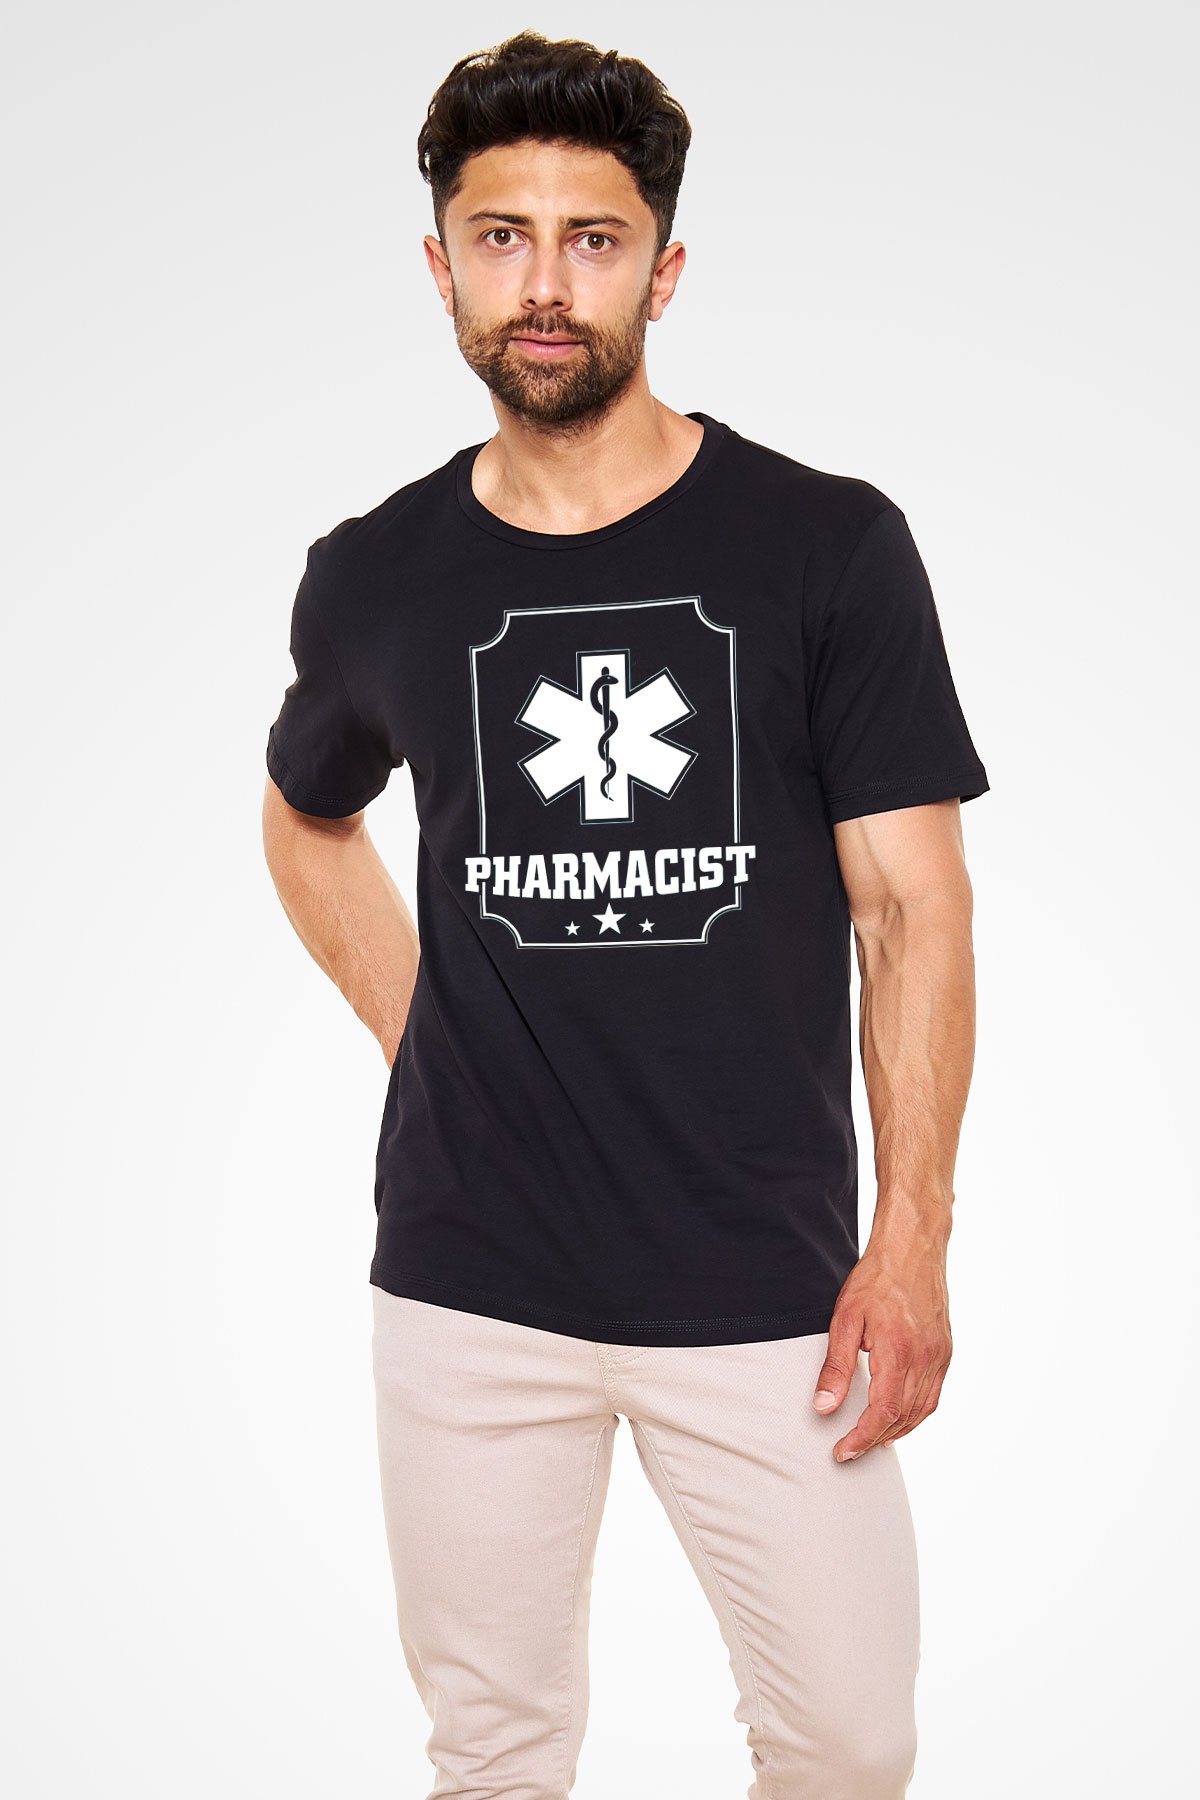 Eczacı Siyah Unisex Tişört T-Shirt - TişörtFabrikası